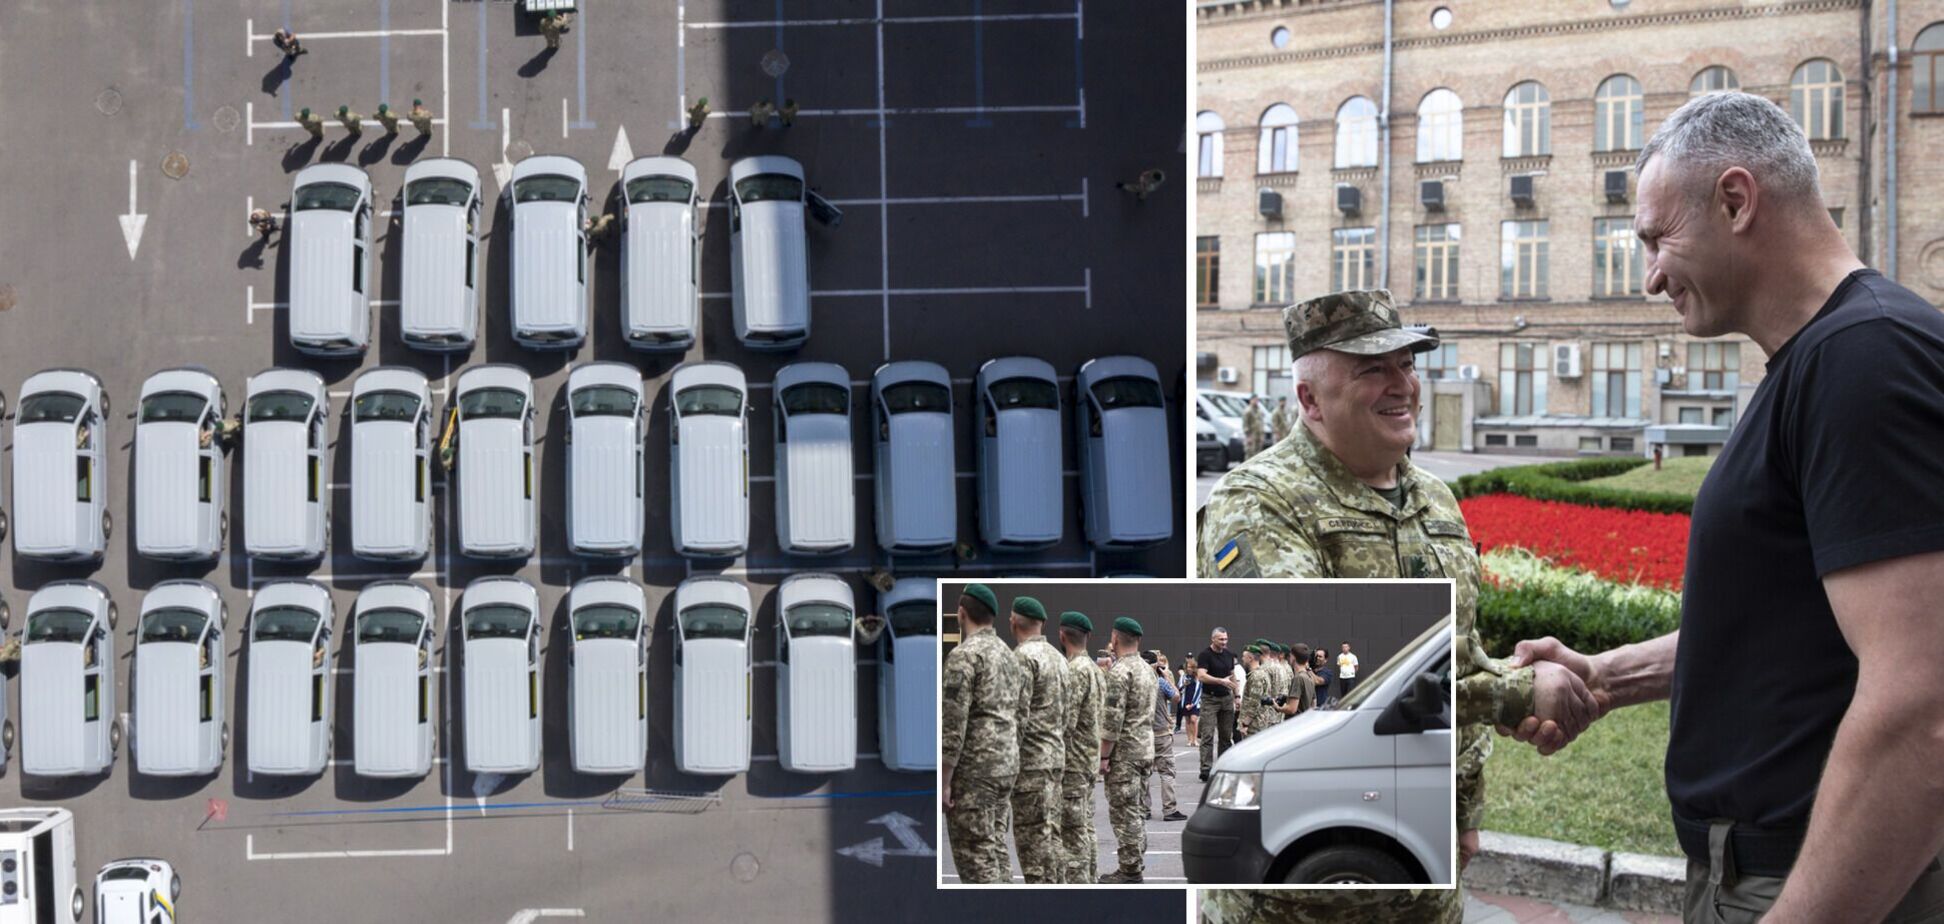 Кличко передал пограничникам 35 микроавтобусов: будут использоваться при патрулировании госграницы. Фото